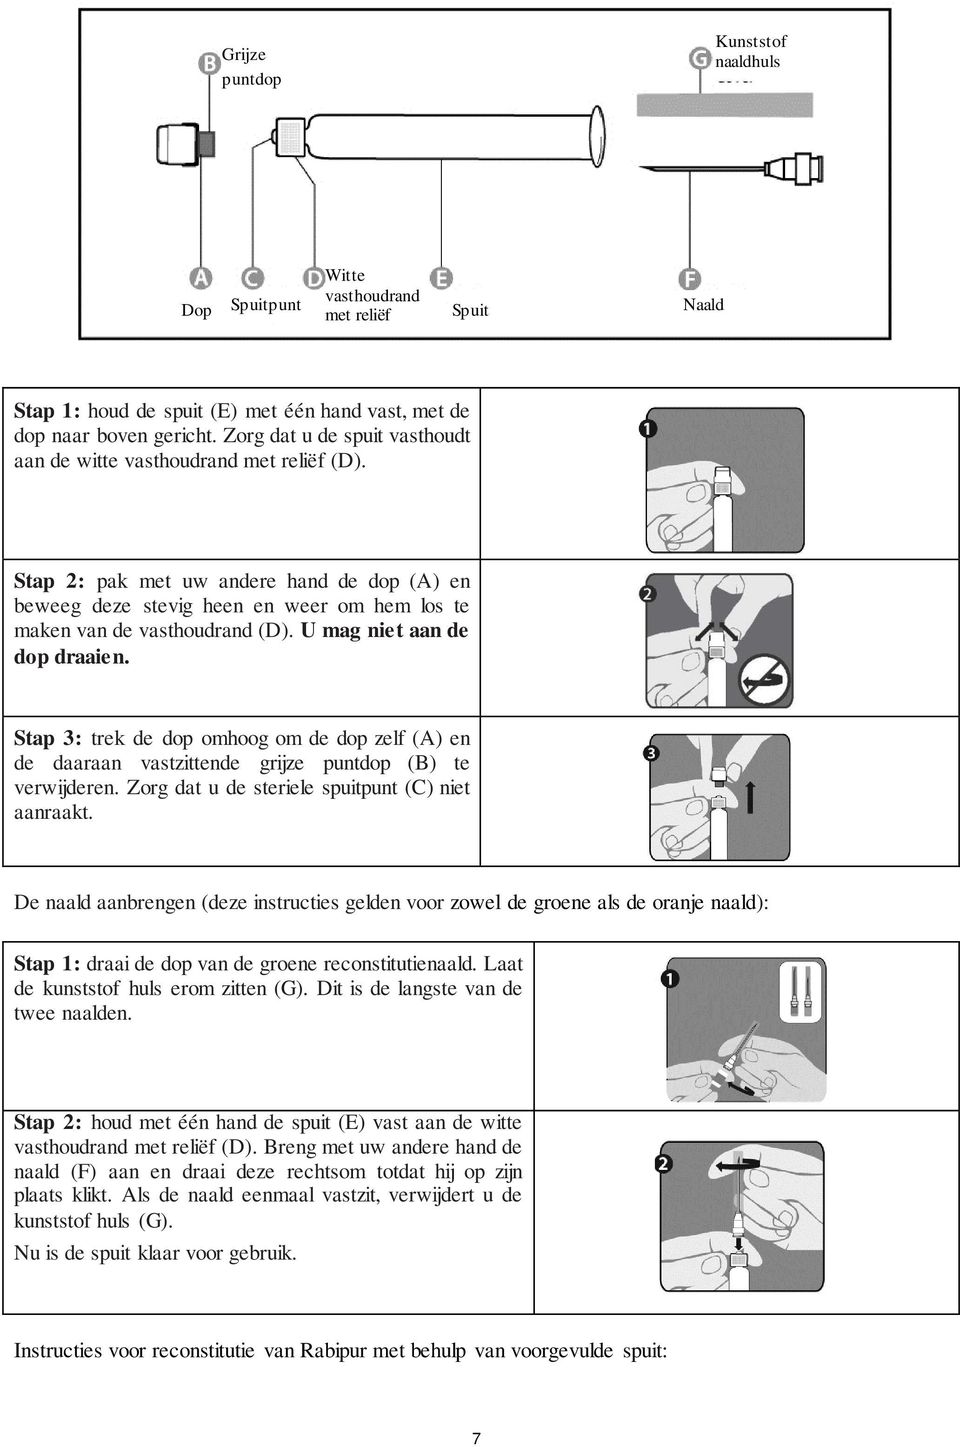 U mag niet aan de dop draaien. Stap 3: trek de dop omhoog om de dop zelf (A) en de daaraan vastzittende grijze puntdop (B) te verwijderen. Zorg dat u de steriele spuitpunt (C) niet aanraakt.